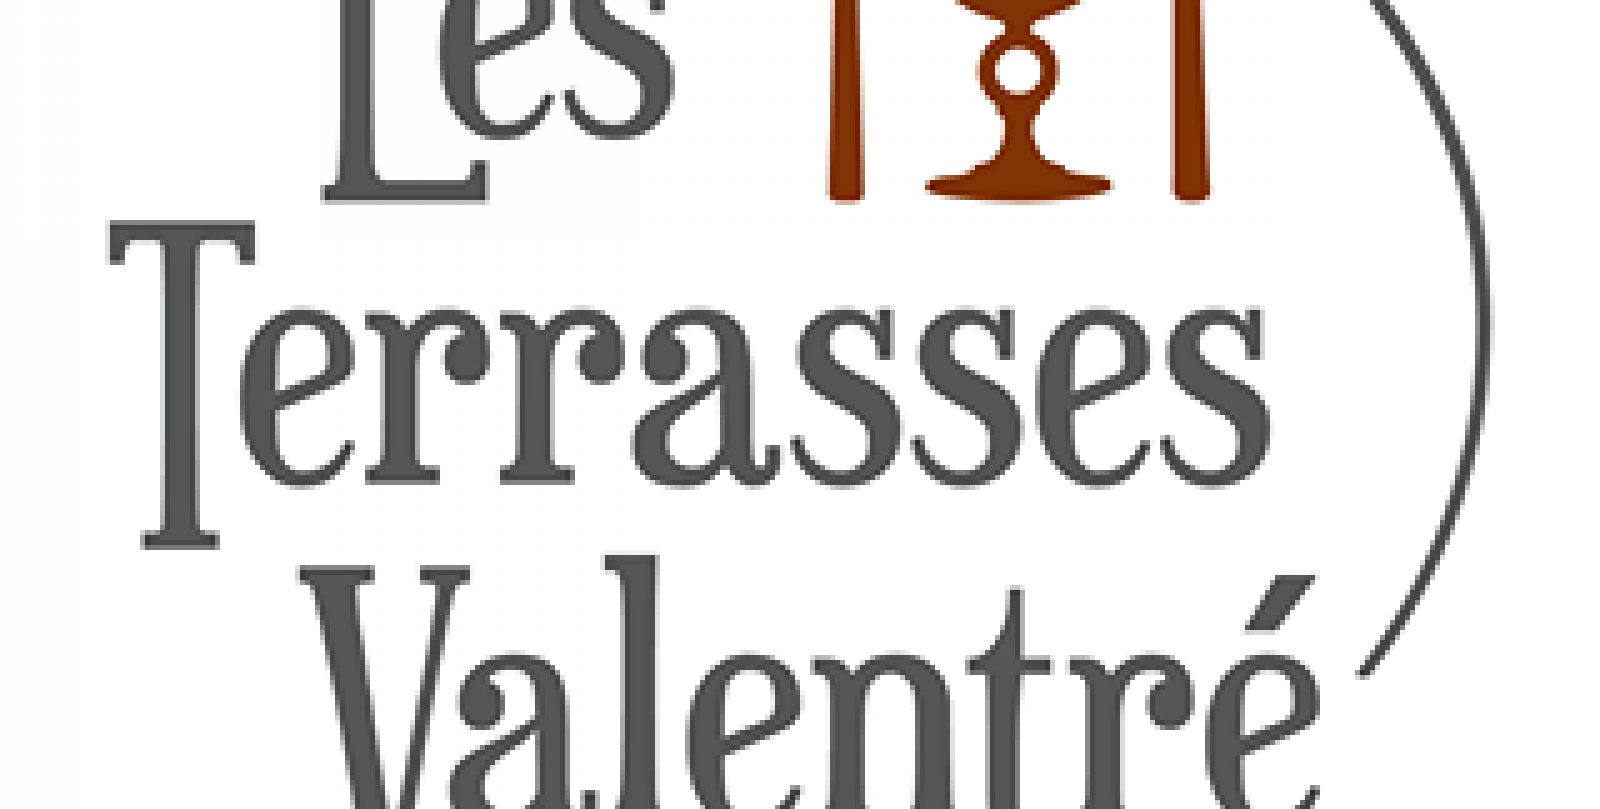 Les Terrasses Valentré by La Chartreuse